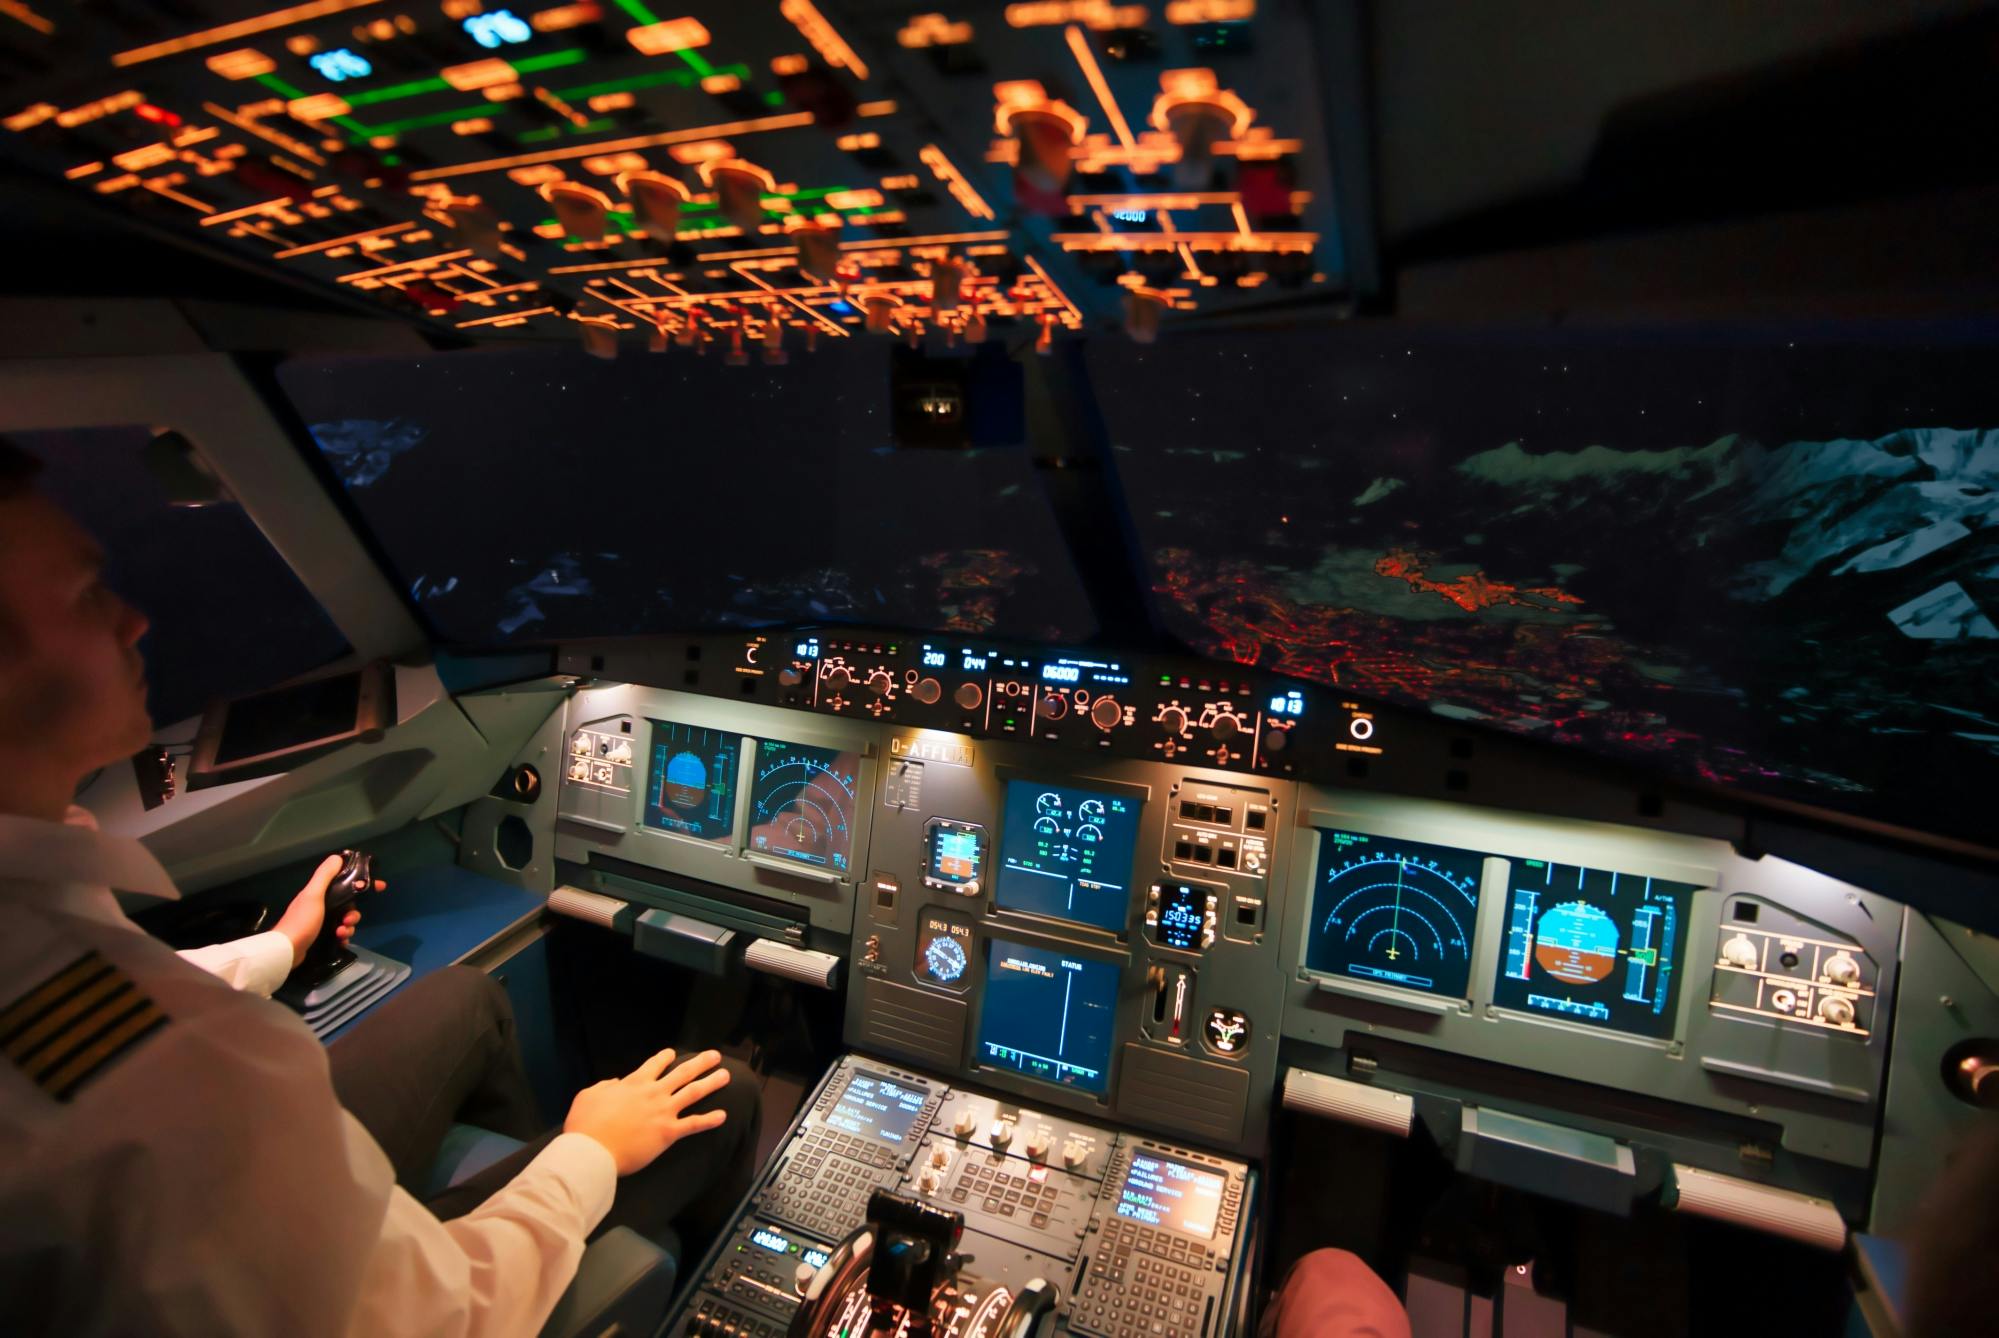 30-minütiger Flug im Airbus A320 Flugsimulator in Hamburg